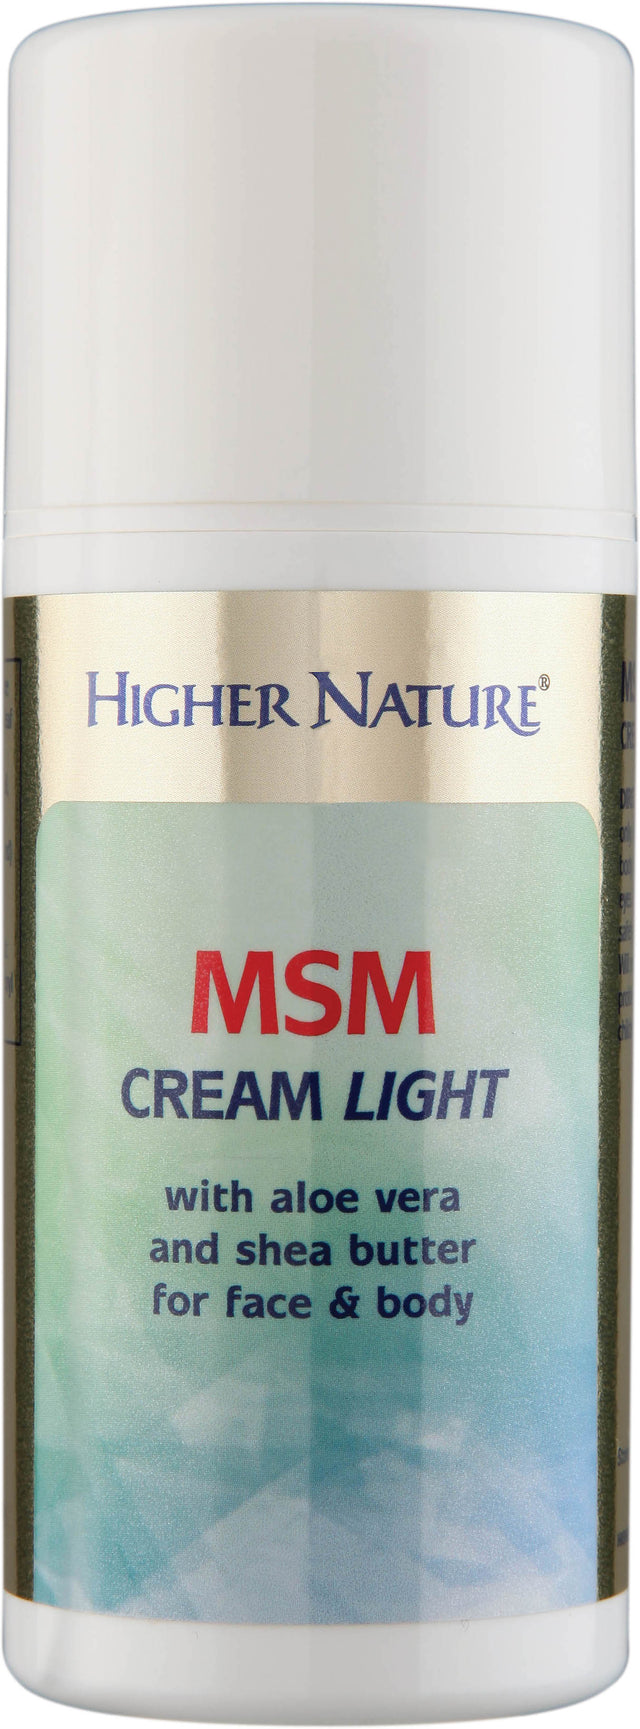 Higher Nature MSM Cream Light, 150ml